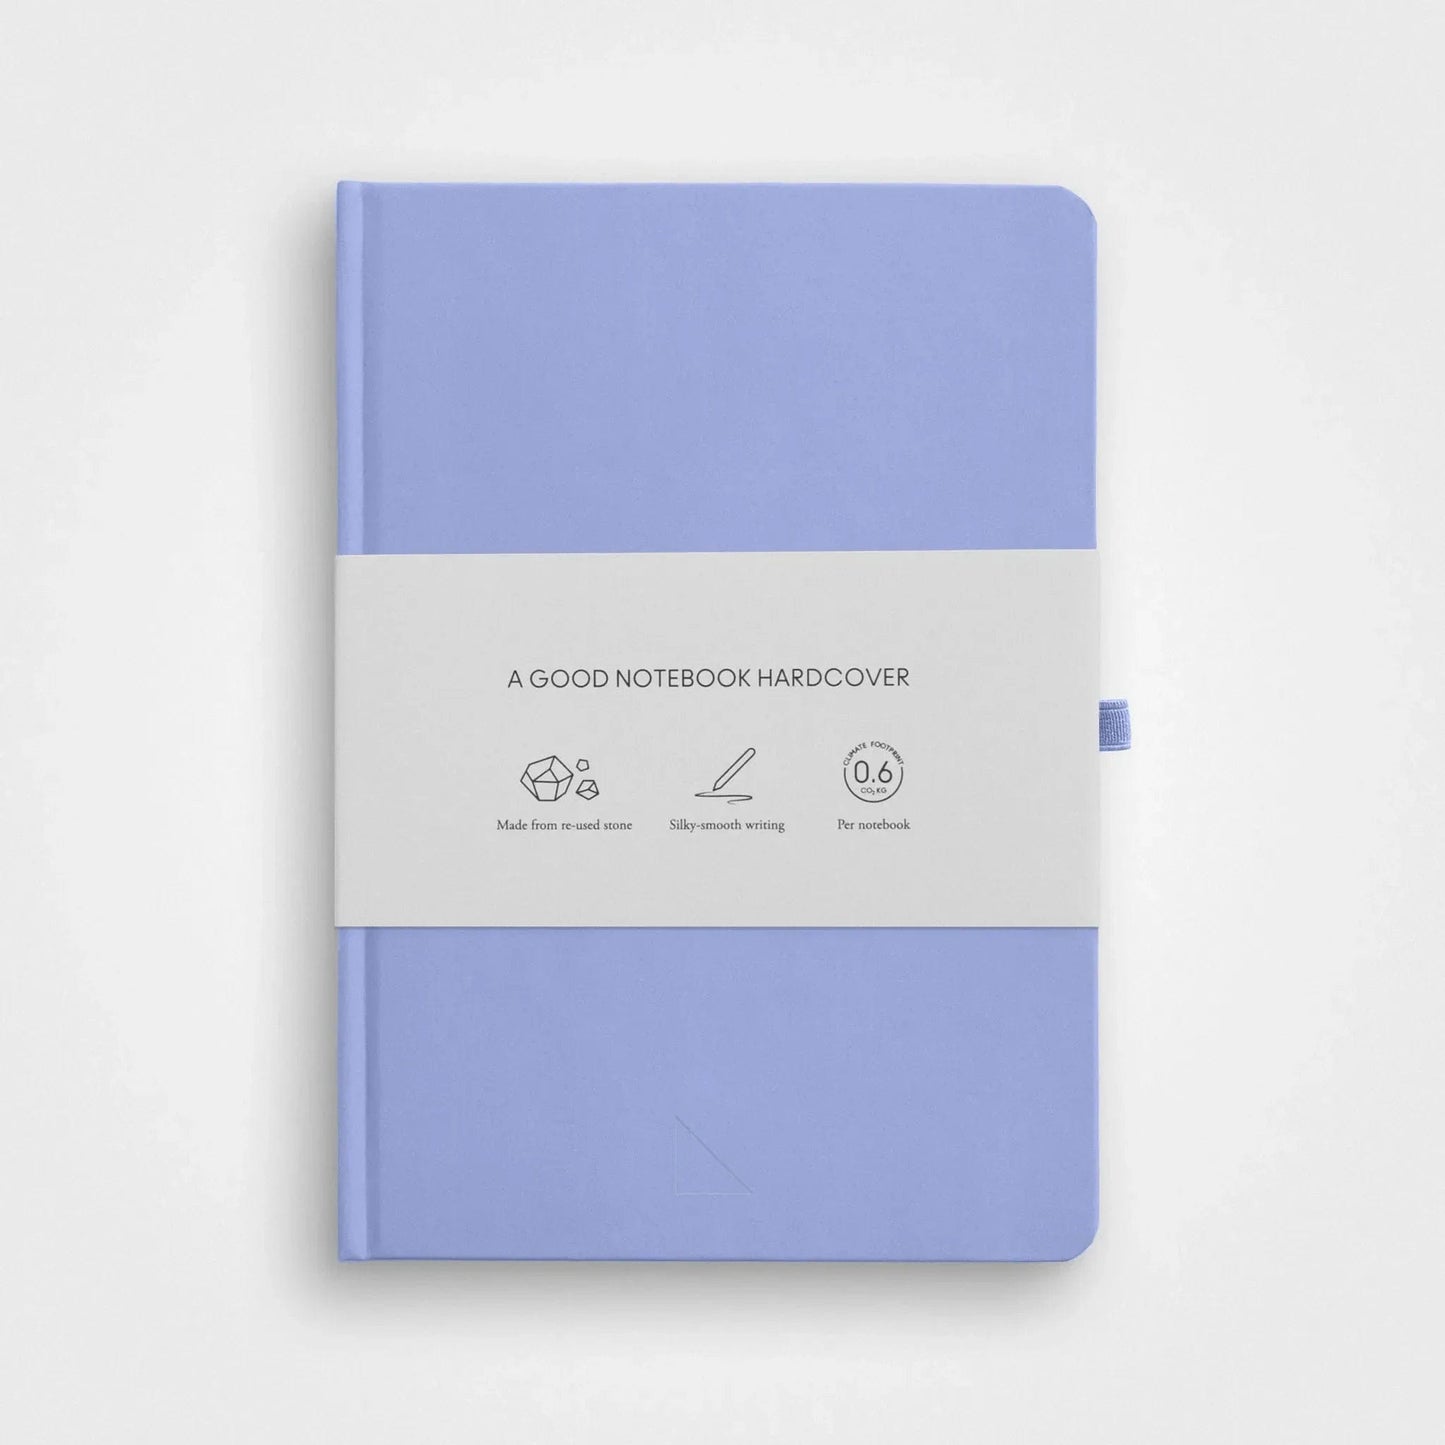 3-pack stenpappers anteckningsbok set︱A5 inbunden, Vista blå